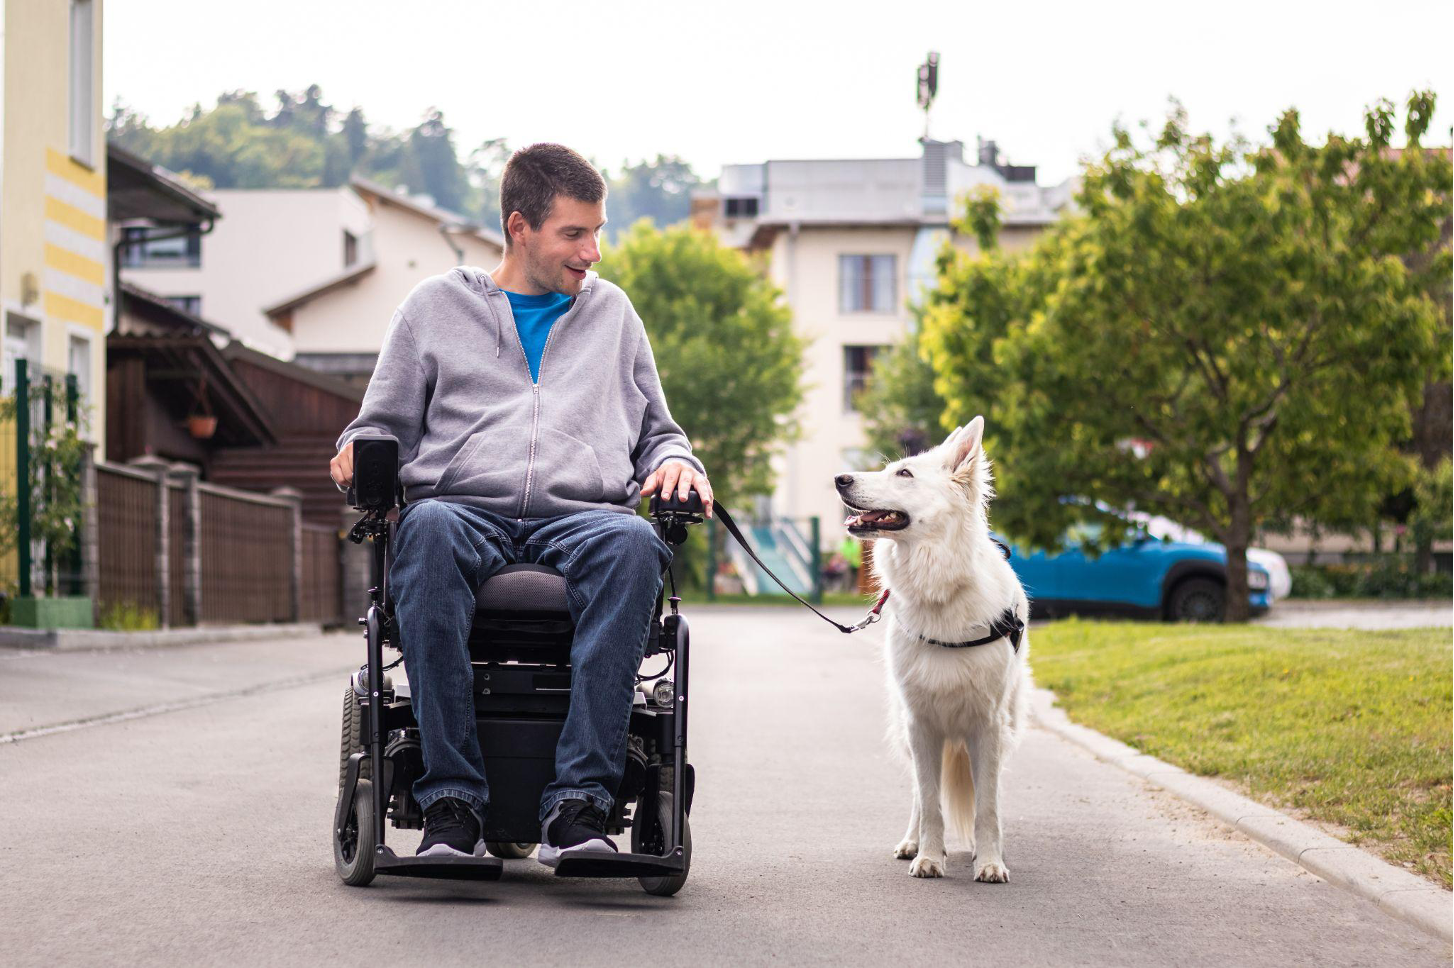  dog walks alongside man in wheelchair